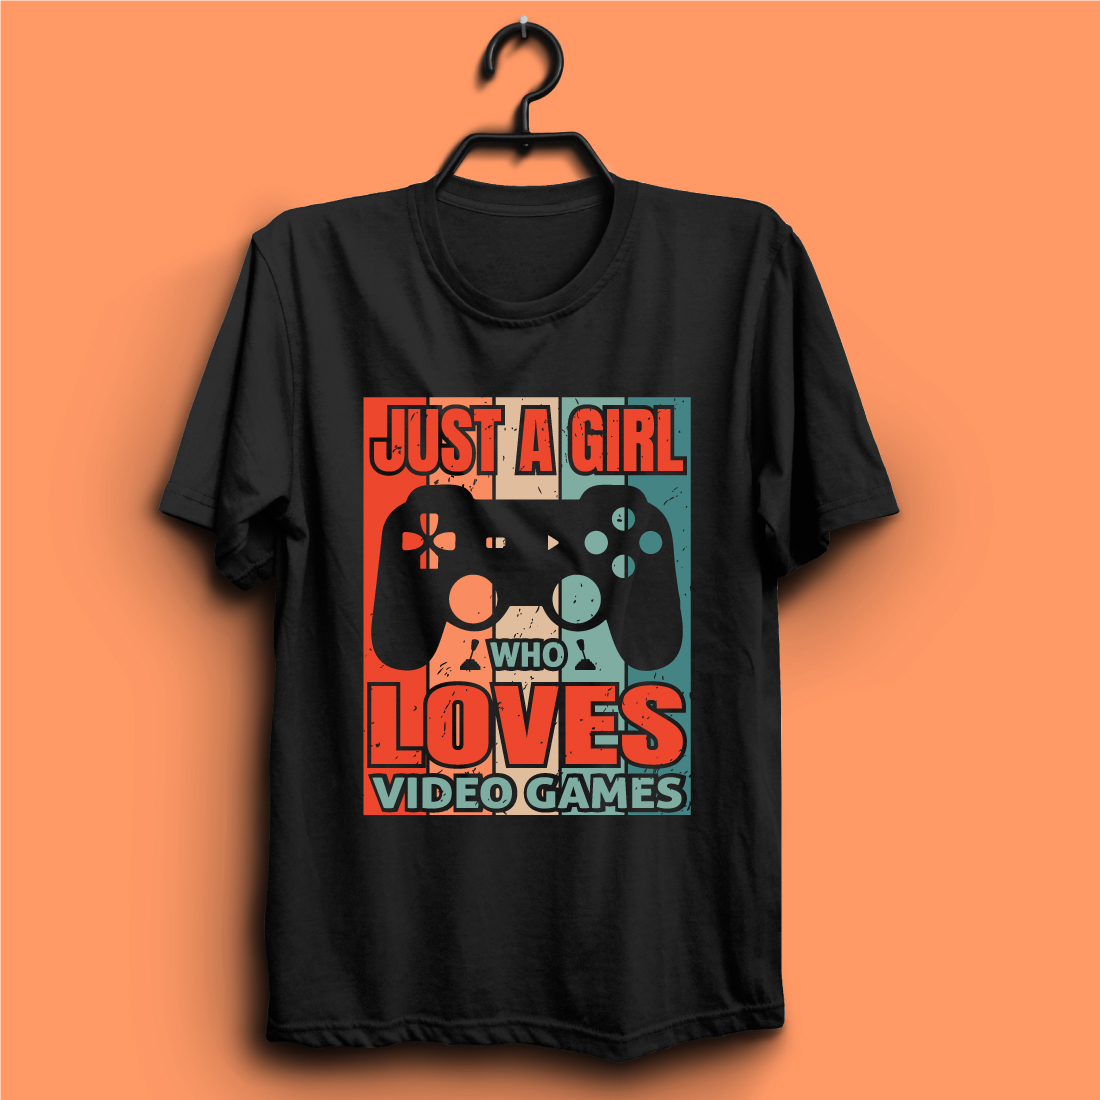 gaming t shirt design02 491